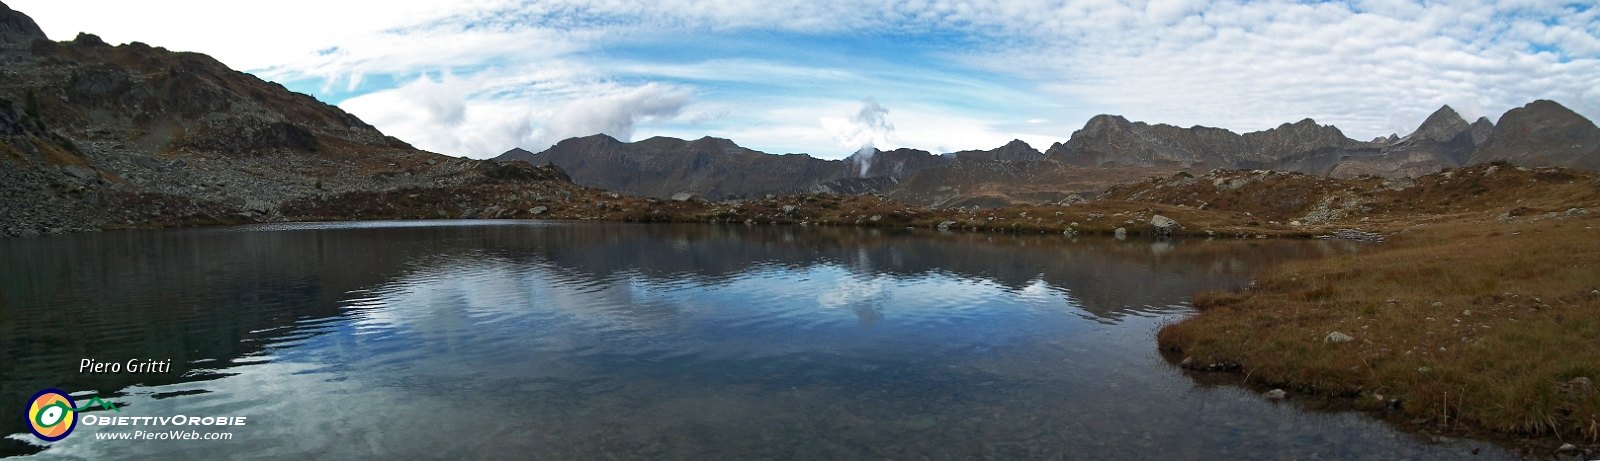 62.1 Panoramica del Lago dei Curiosi.jpg